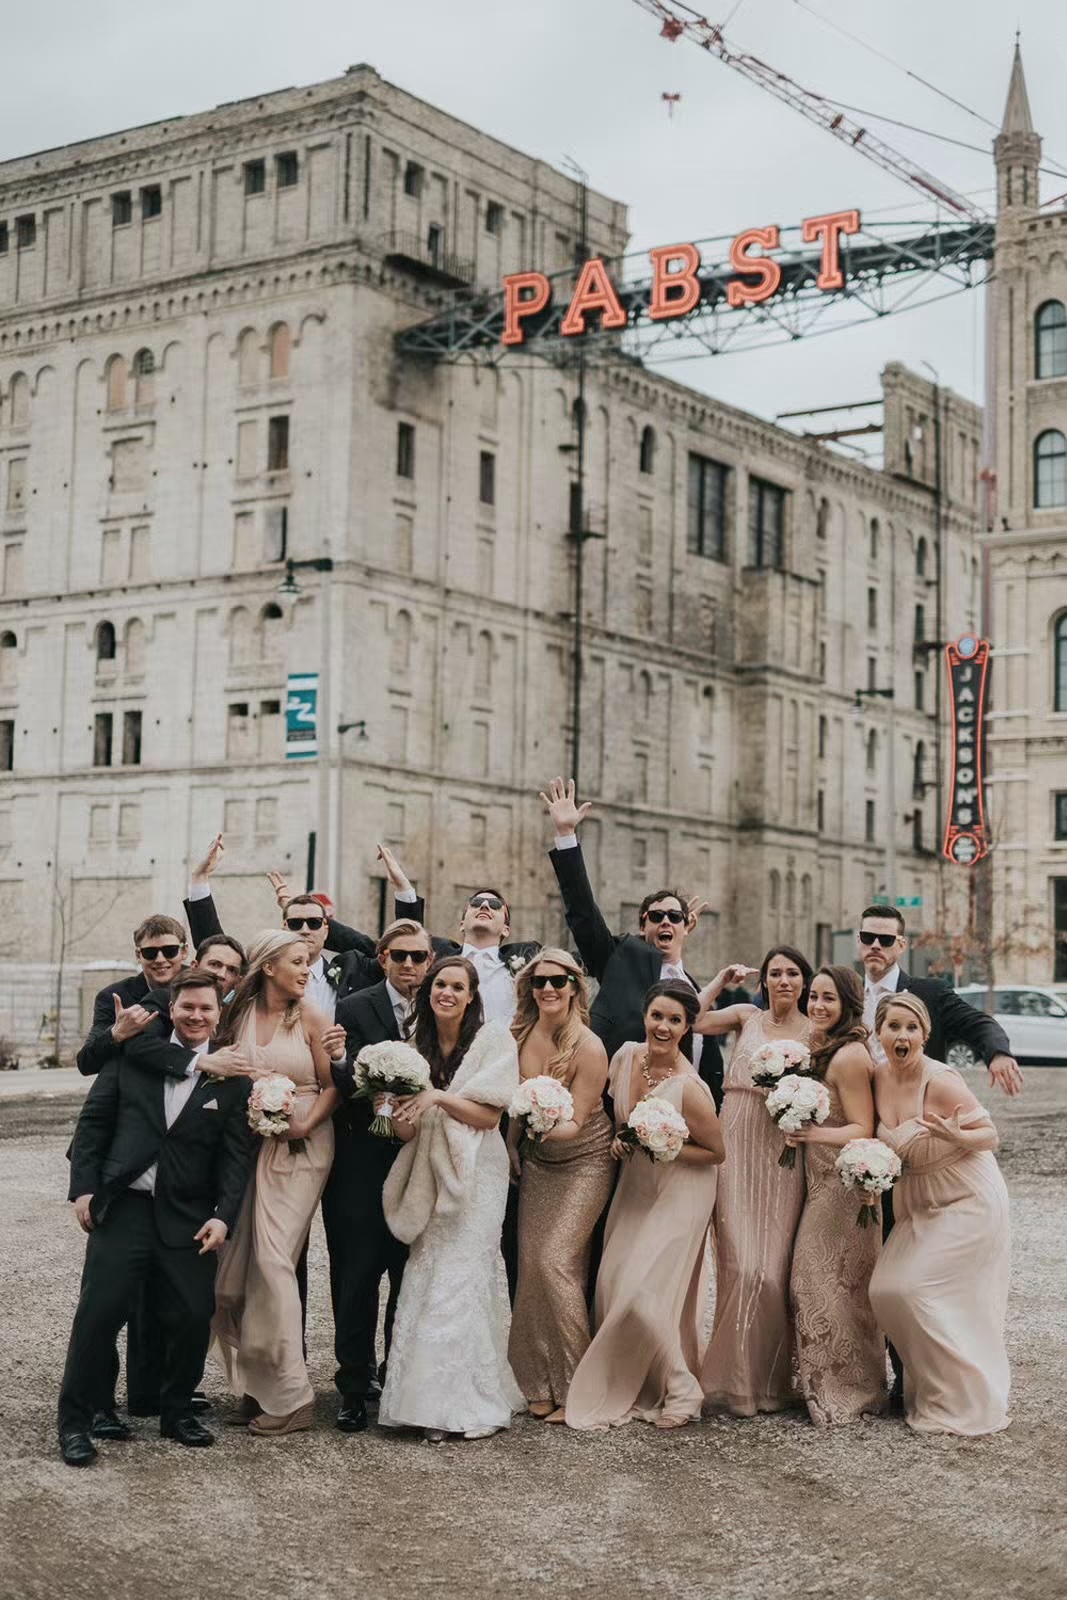 Historic Milwaukee wedding venues